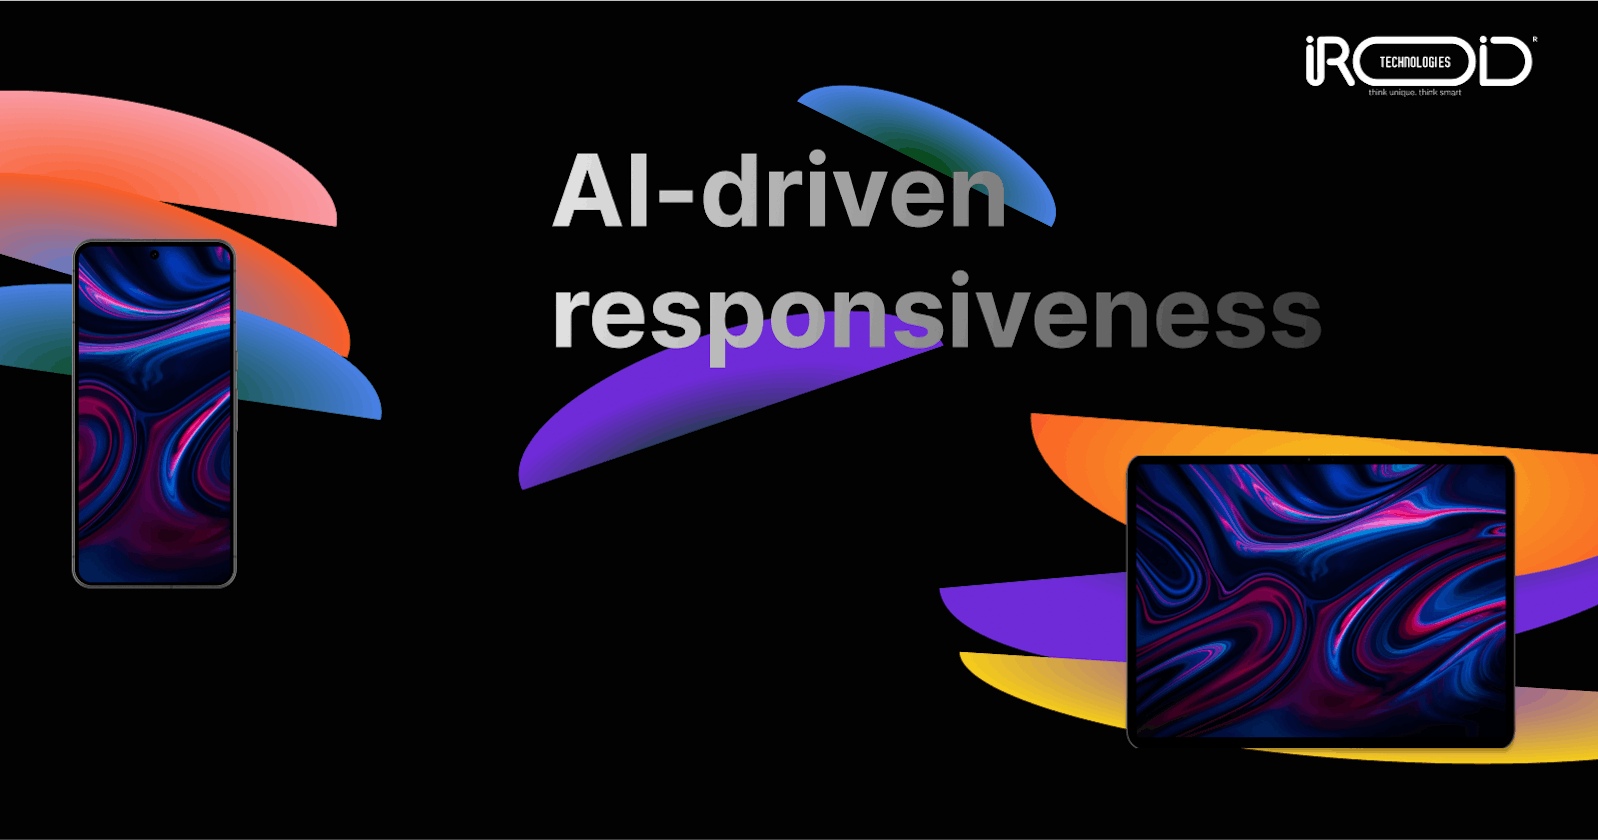 AI-driven responsiveness to web design